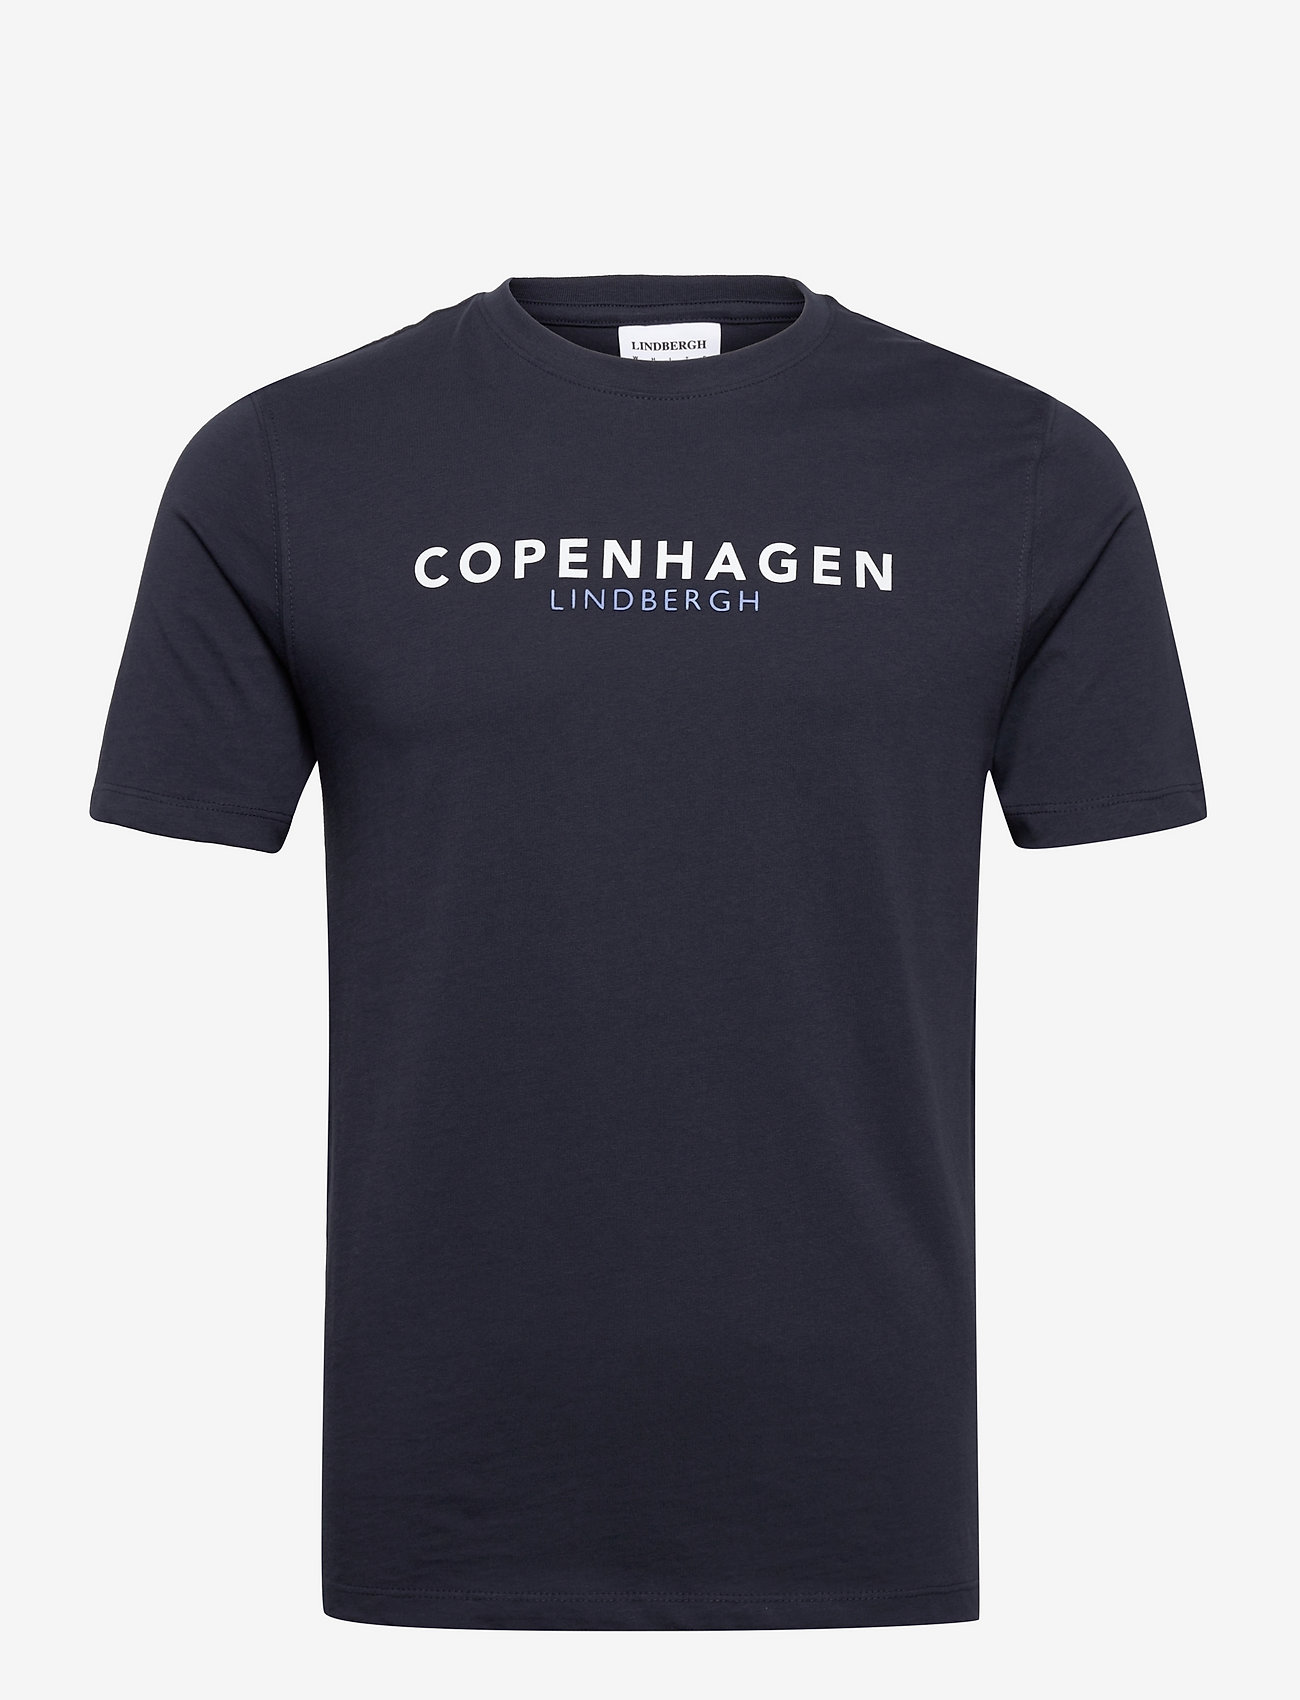 Lindbergh - Copenhagen print tee - t-shirts met print - navy - 0